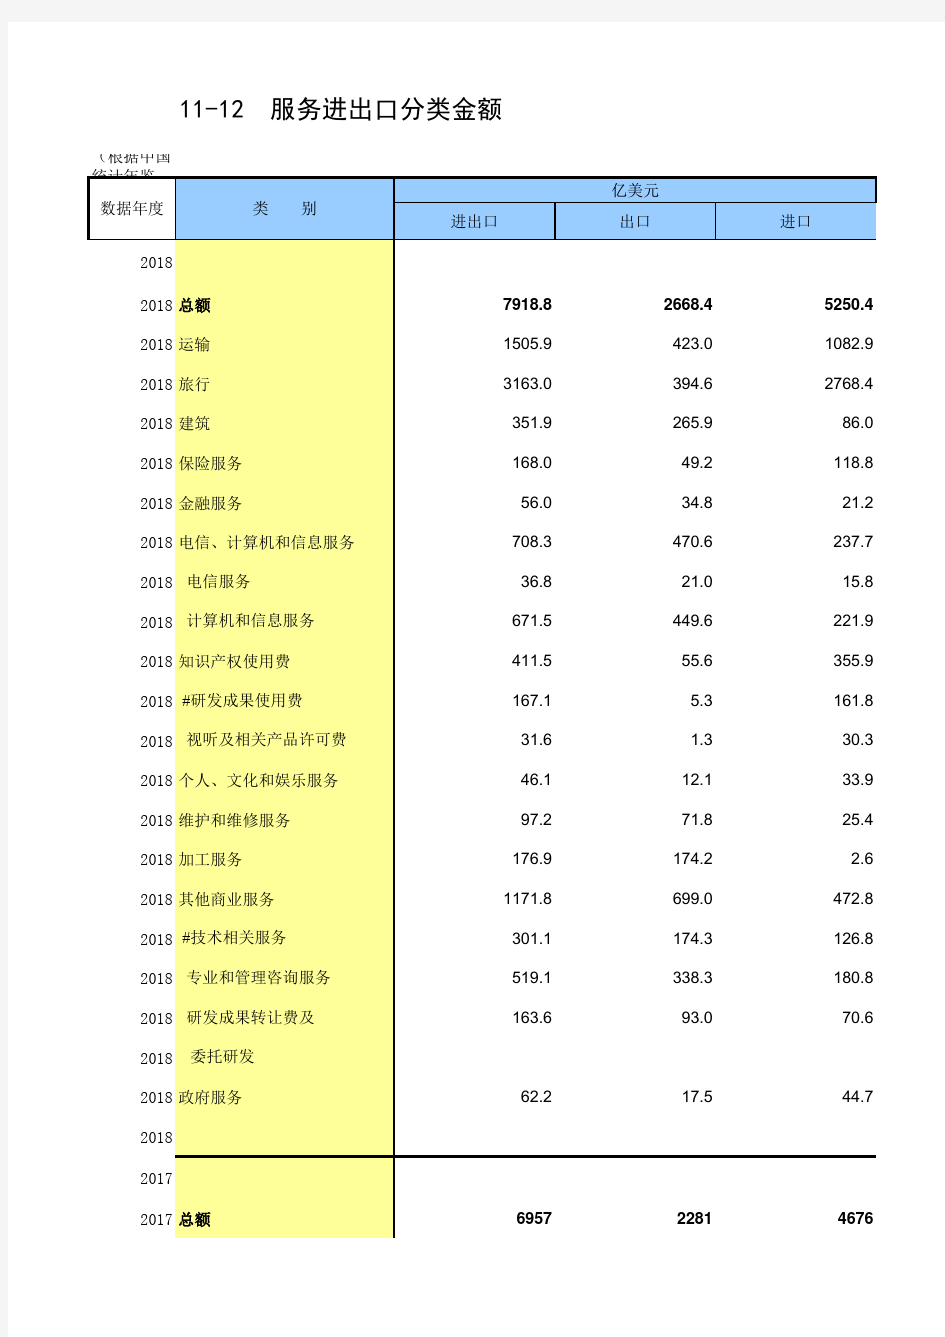 11-12 中国统计年鉴数据处理：服务进出口分类金额(仅全国指标,便于2015-2018多年数据分析对比)